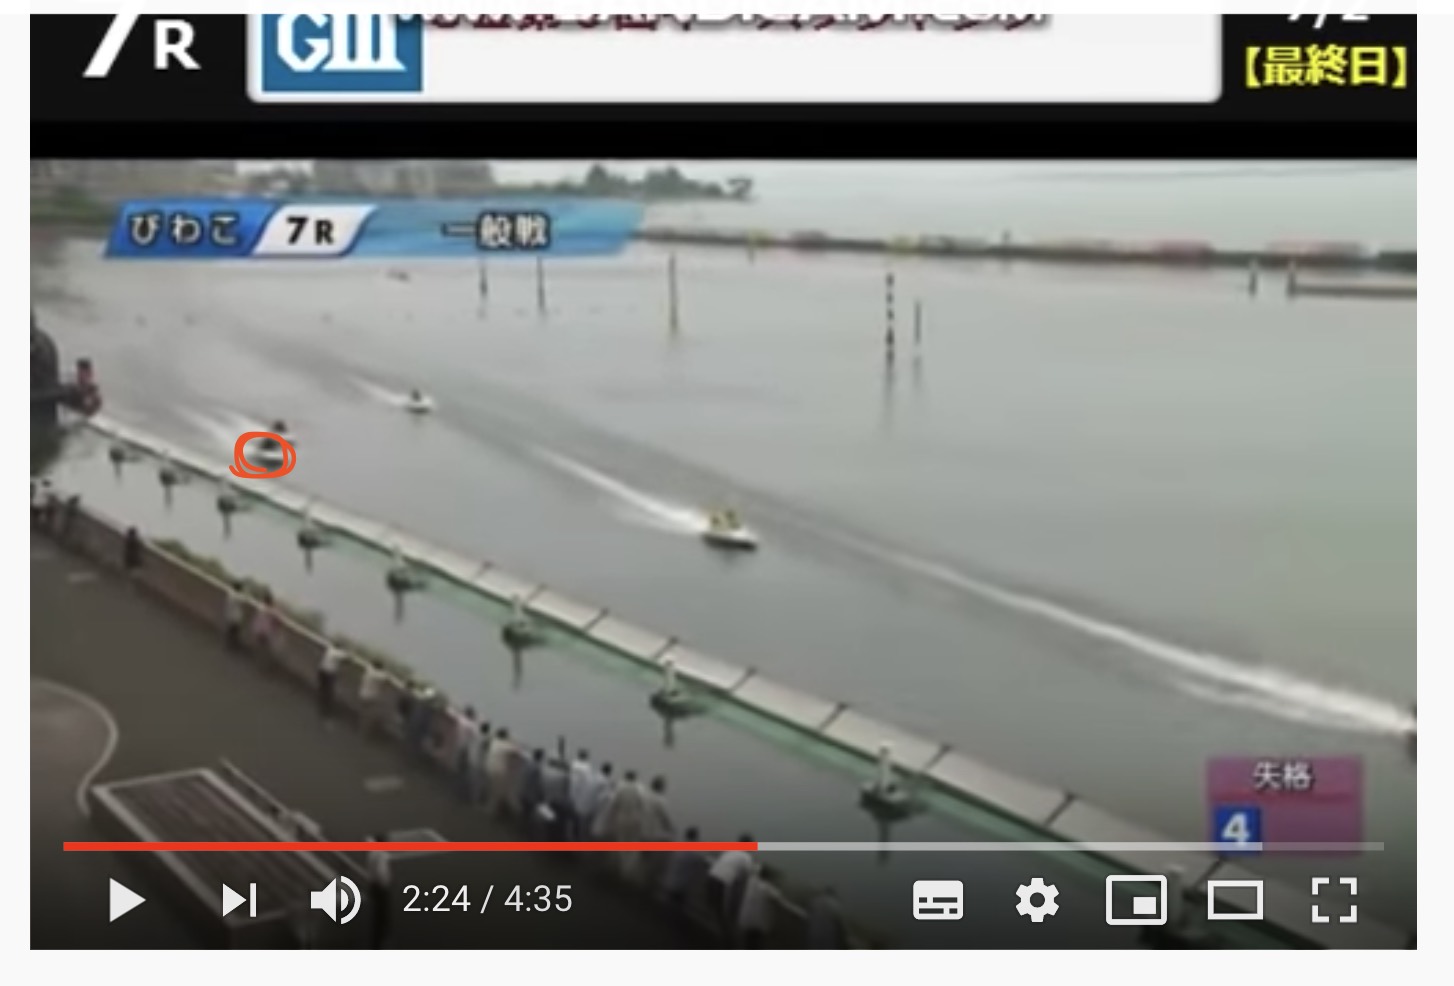 西川昌希の競艇八百長疑惑のレース2019年 7月2日の前半7R